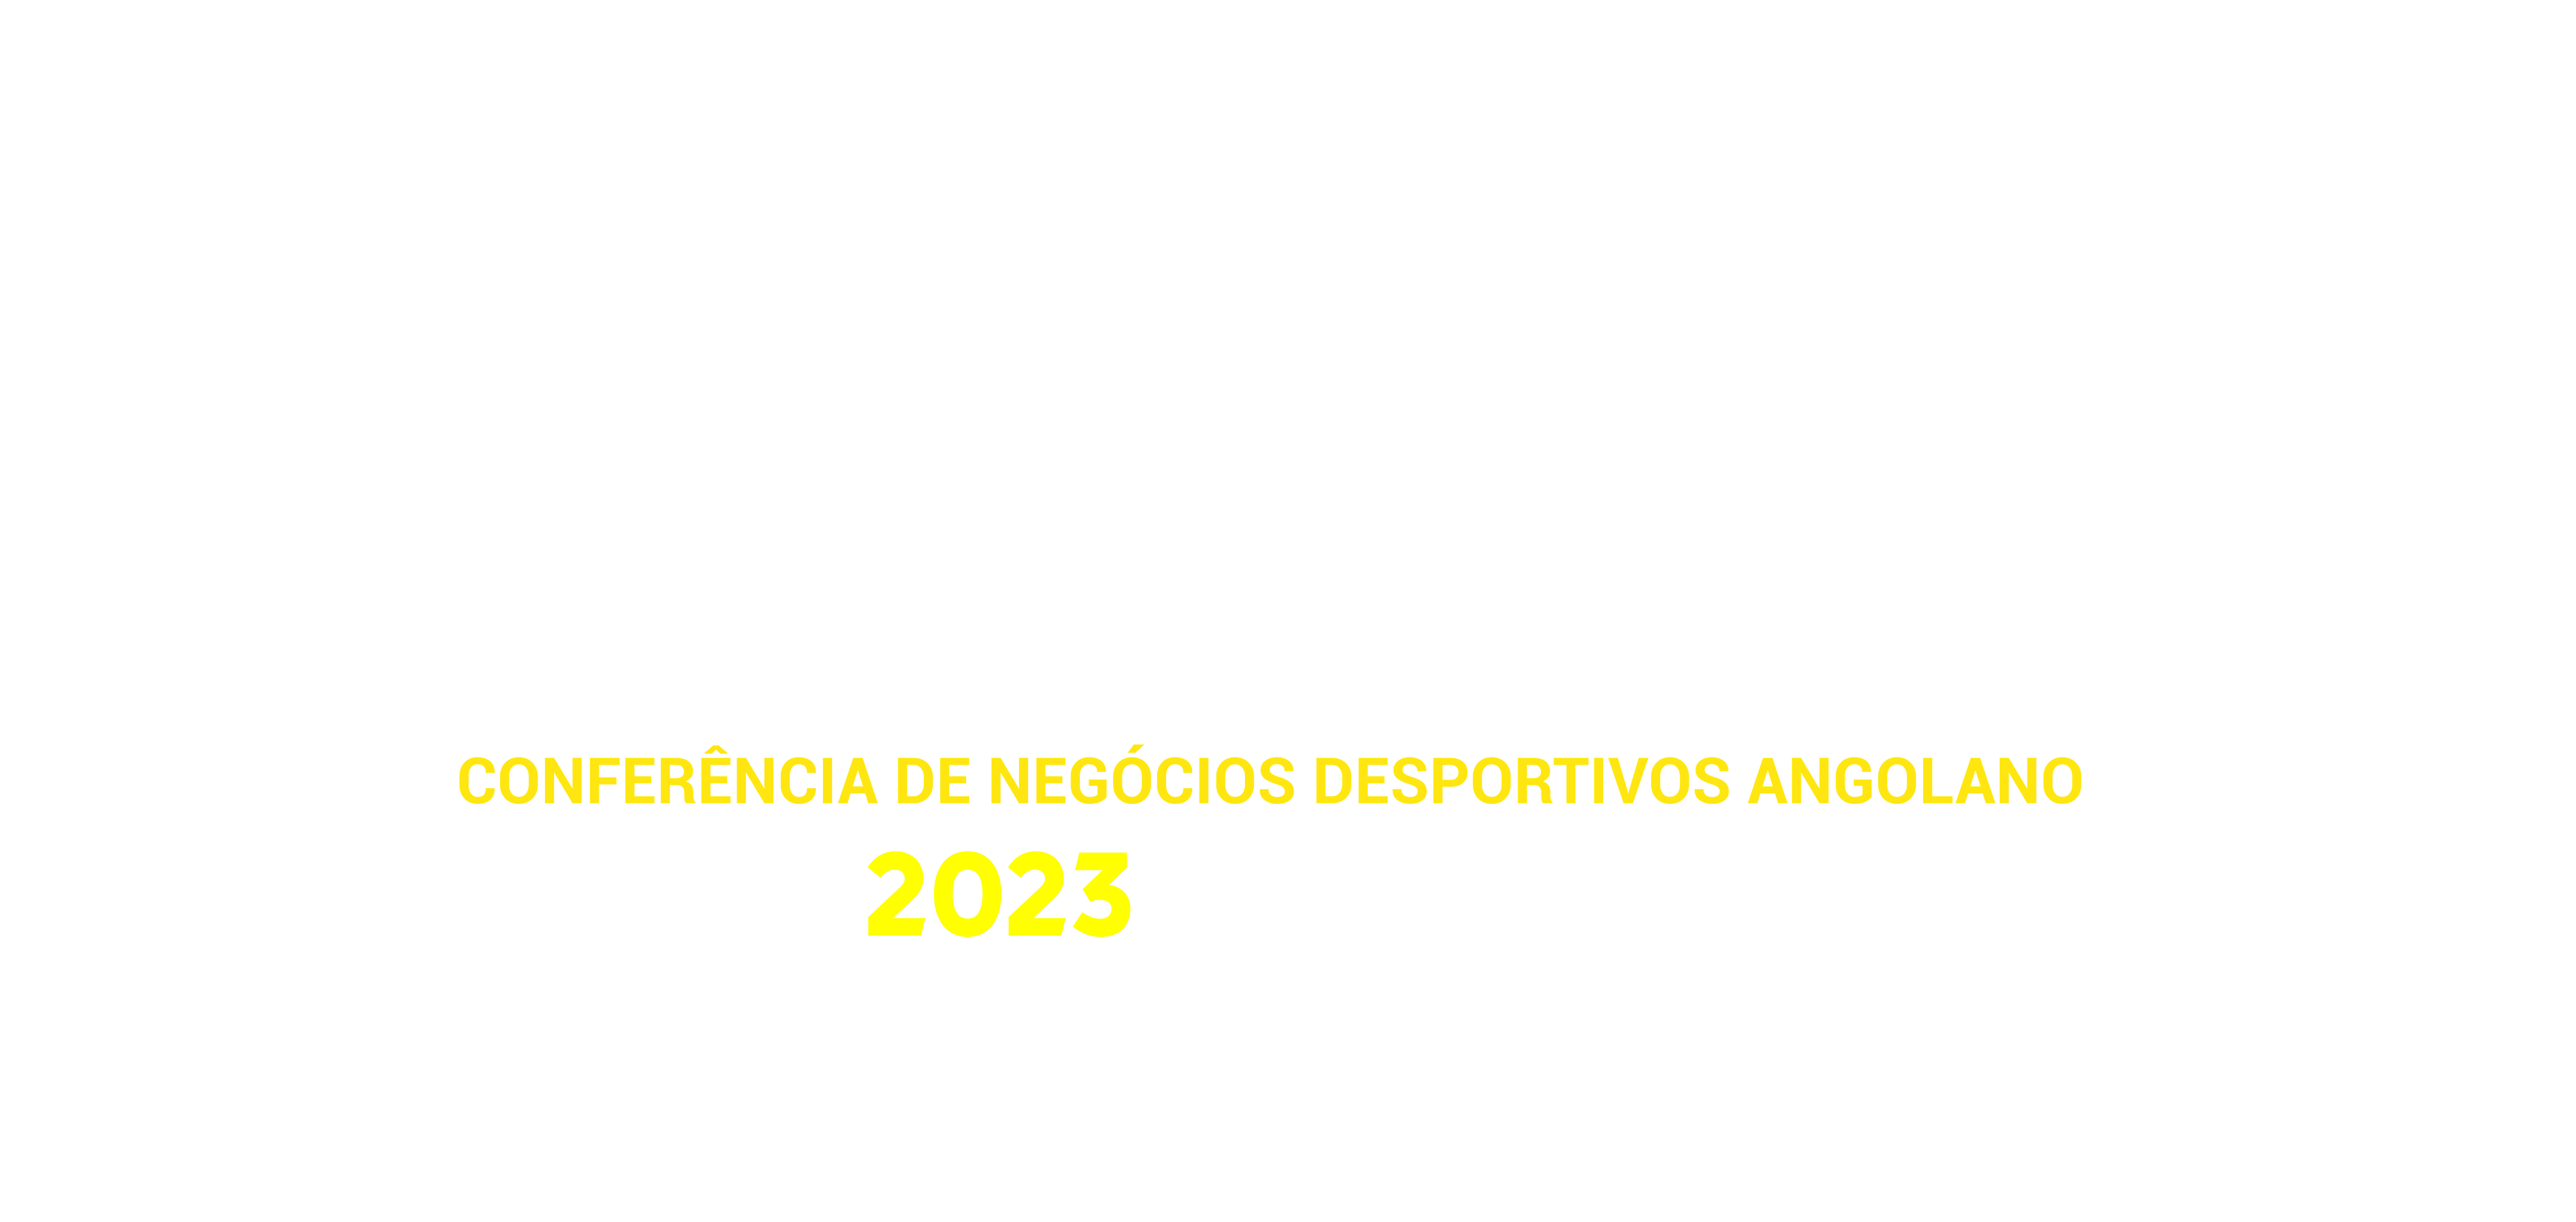 CONFENDA 2023